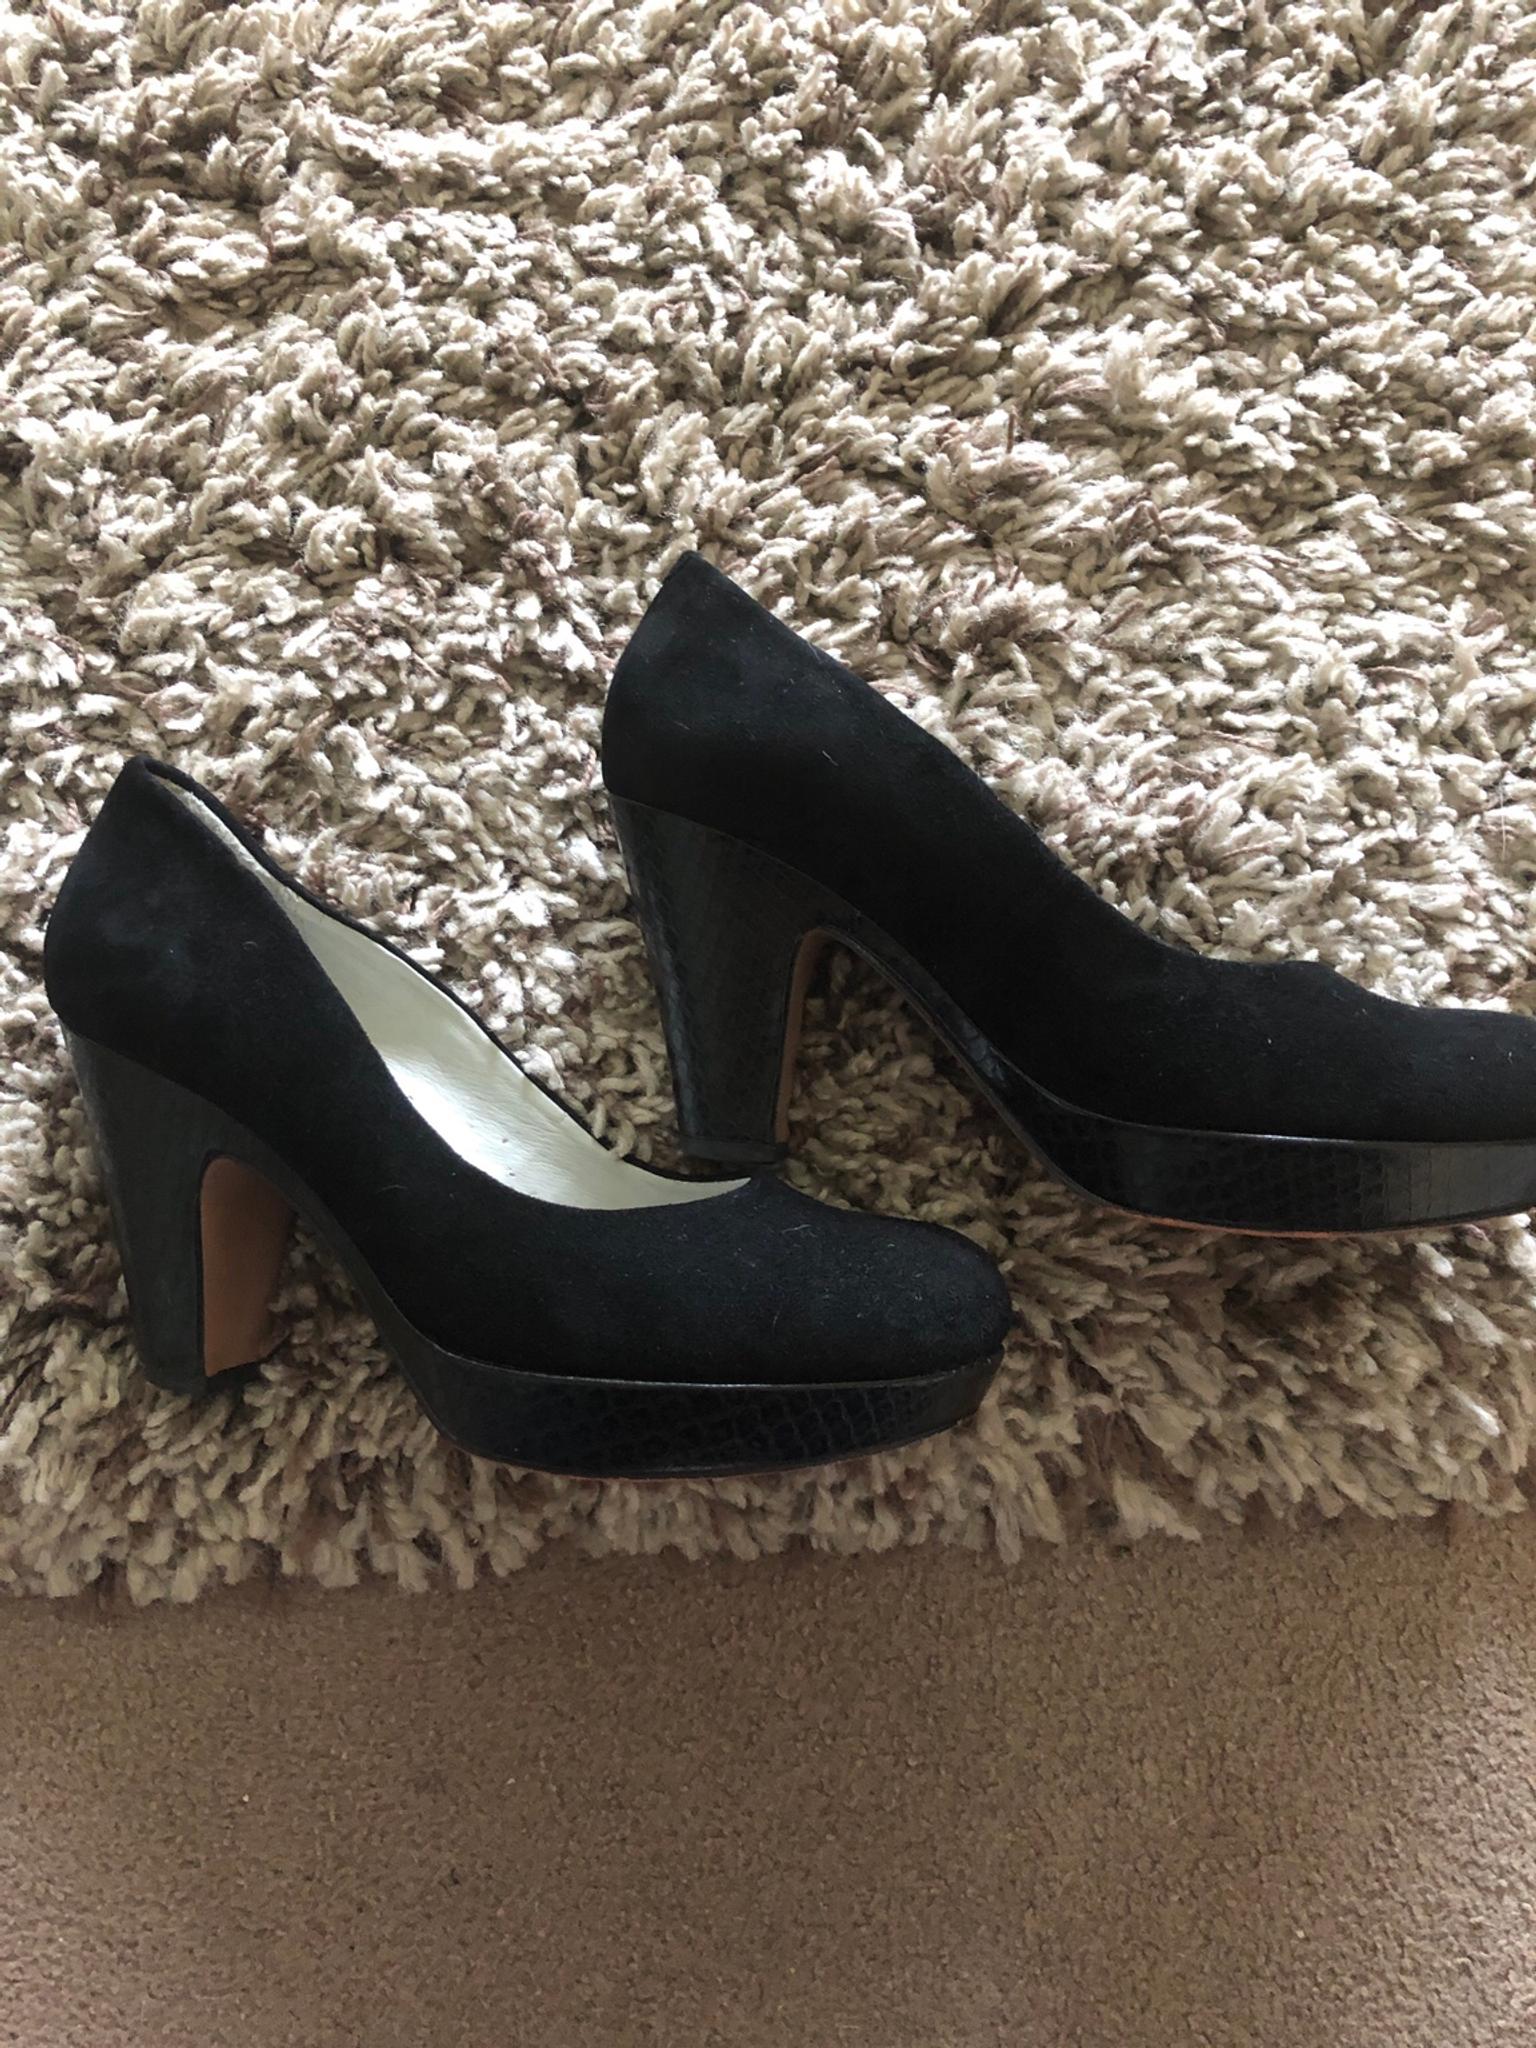 clarks ladies black shoes size 6